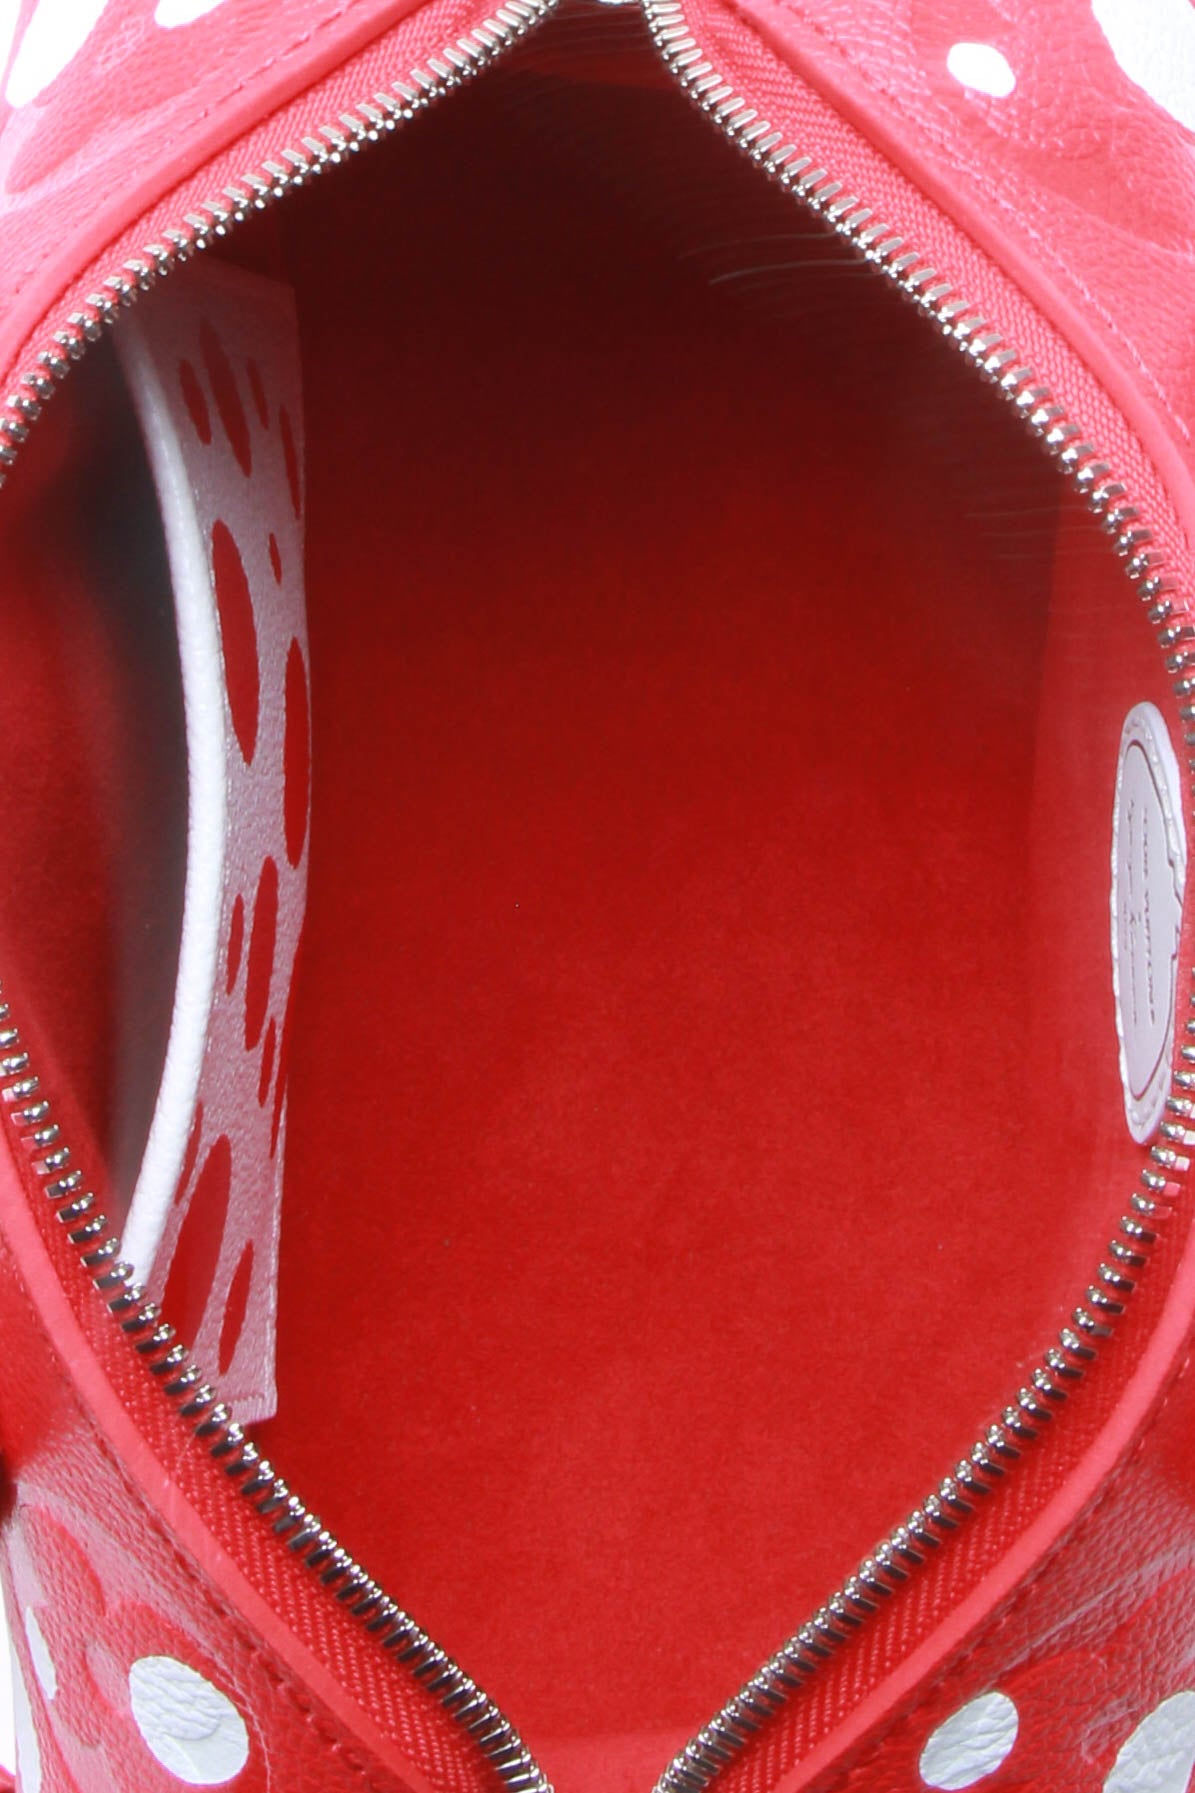 Louis Vuitton Womens Speedy Bandouliere Bag Empreinte Red 20